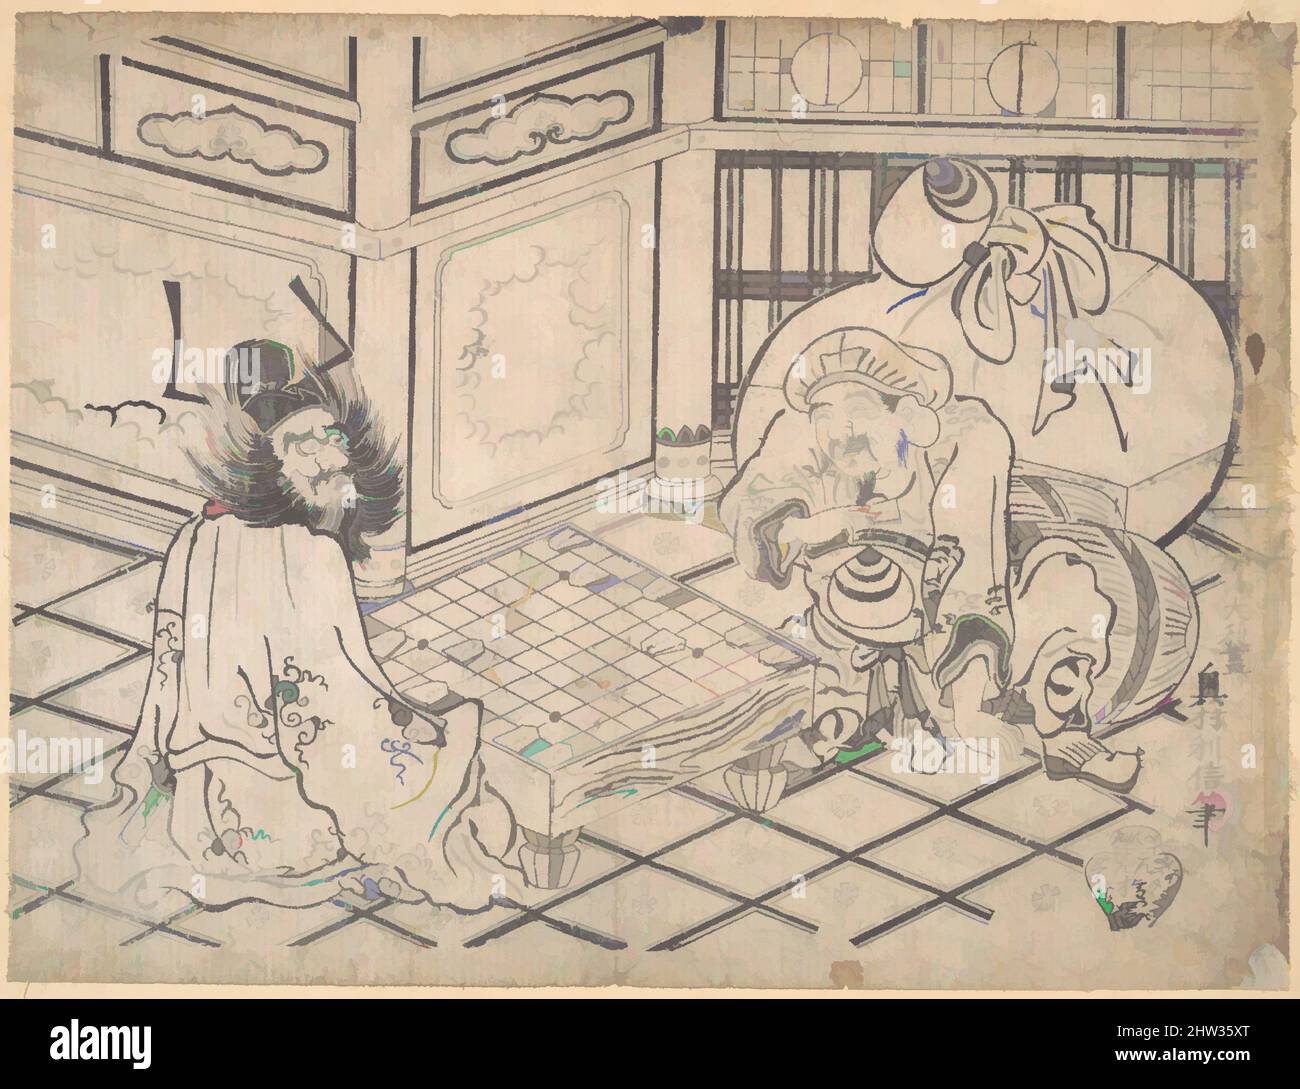 Art inspiré par Daikoku et Shoki jouant aux échecs, période Edo (1615–1868), ca. 1730, Japon, impression monochrome sur bois ; encre et couleur sur papier, 9 x 12 cm (22,9 x 30,5 cm), tirages, Okumura Toshinobu (active ca. 1725–1750), représentations pleines d'esprit des différents dieux du bon d'inspiration chinoise, œuvres classiques modernisées par Artotop avec une touche de modernité. Formes, couleur et valeur, impact visuel accrocheur sur l'art émotions par la liberté d'œuvres d'art d'une manière contemporaine. Un message intemporel qui cherche une nouvelle direction créative. Artistes qui se tournent vers le support numérique et créent le NFT Artotop Banque D'Images